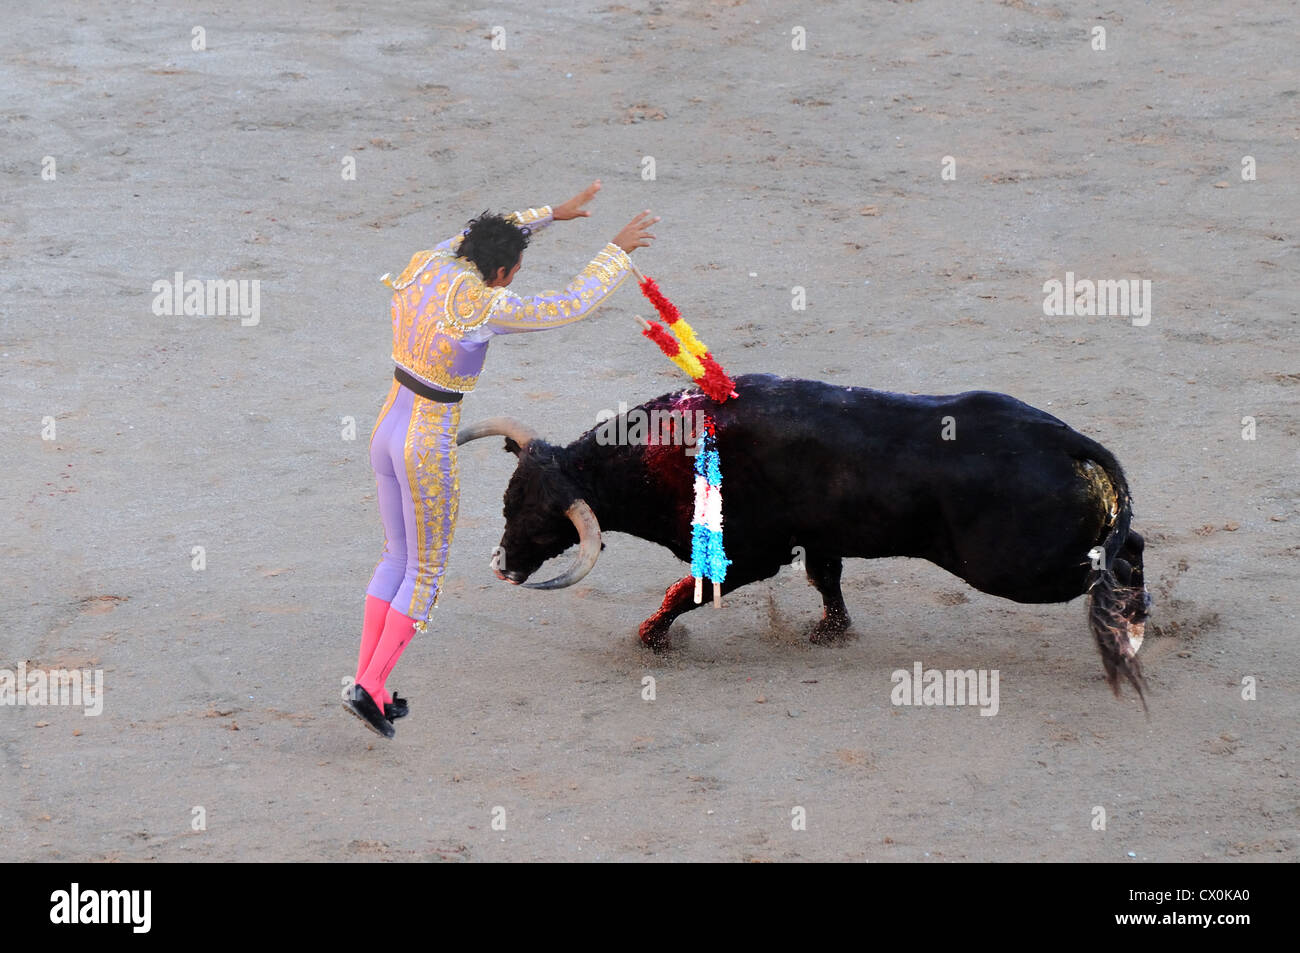 Matador lanzas de siembra en el lomo del toro de carga corrida toros en arena romana Arles Francia Foto de stock